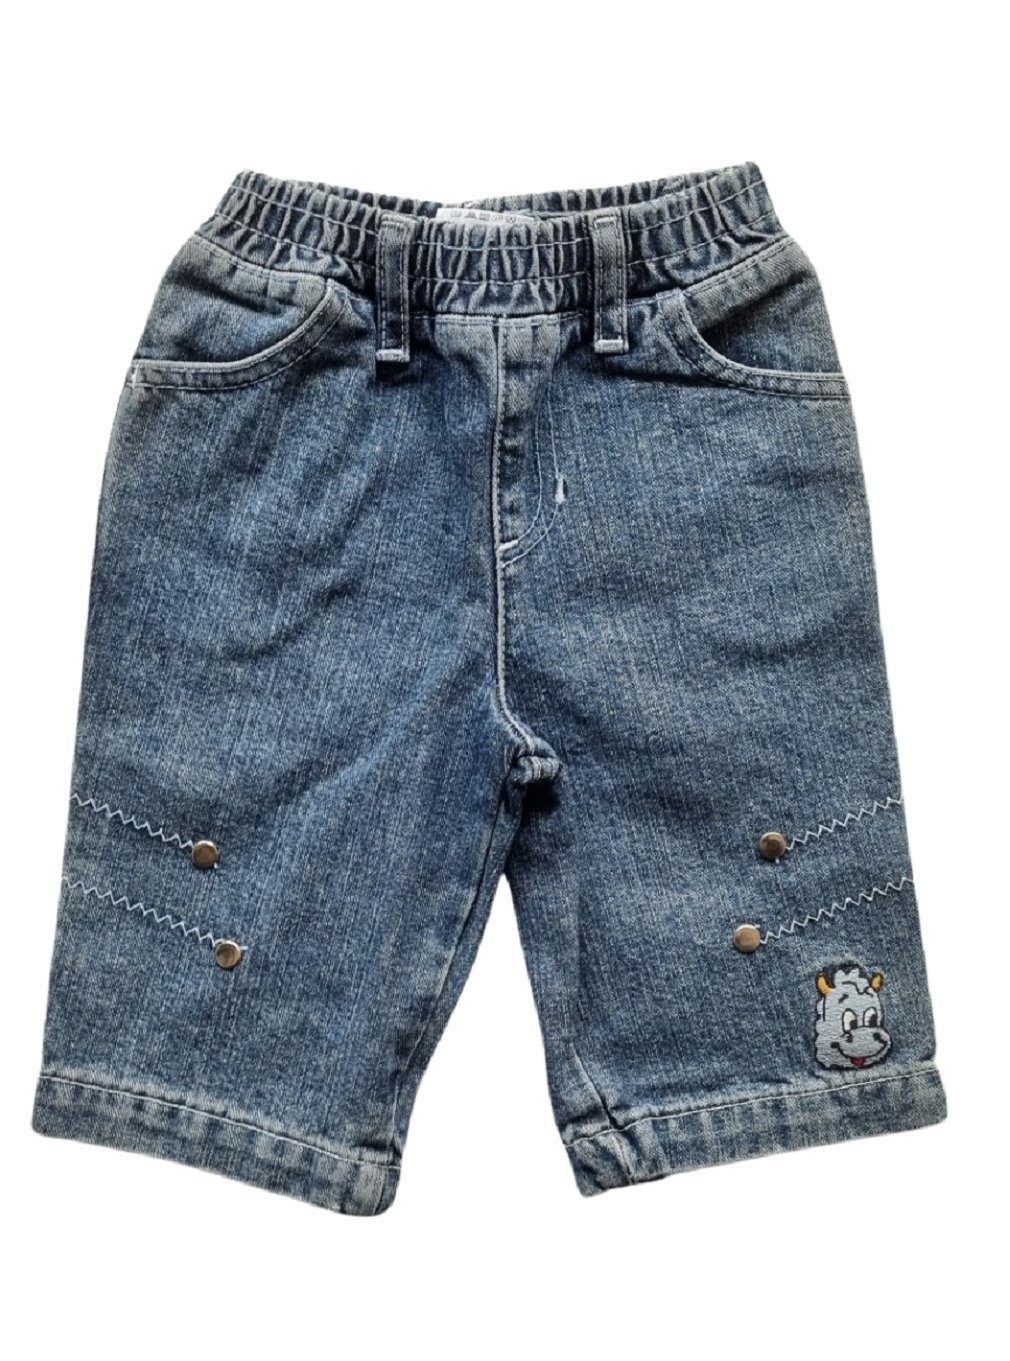 TABEO 5-Pocket-Jeans 23403 Tabeo blau - Größe 62/ 68 | Jeans